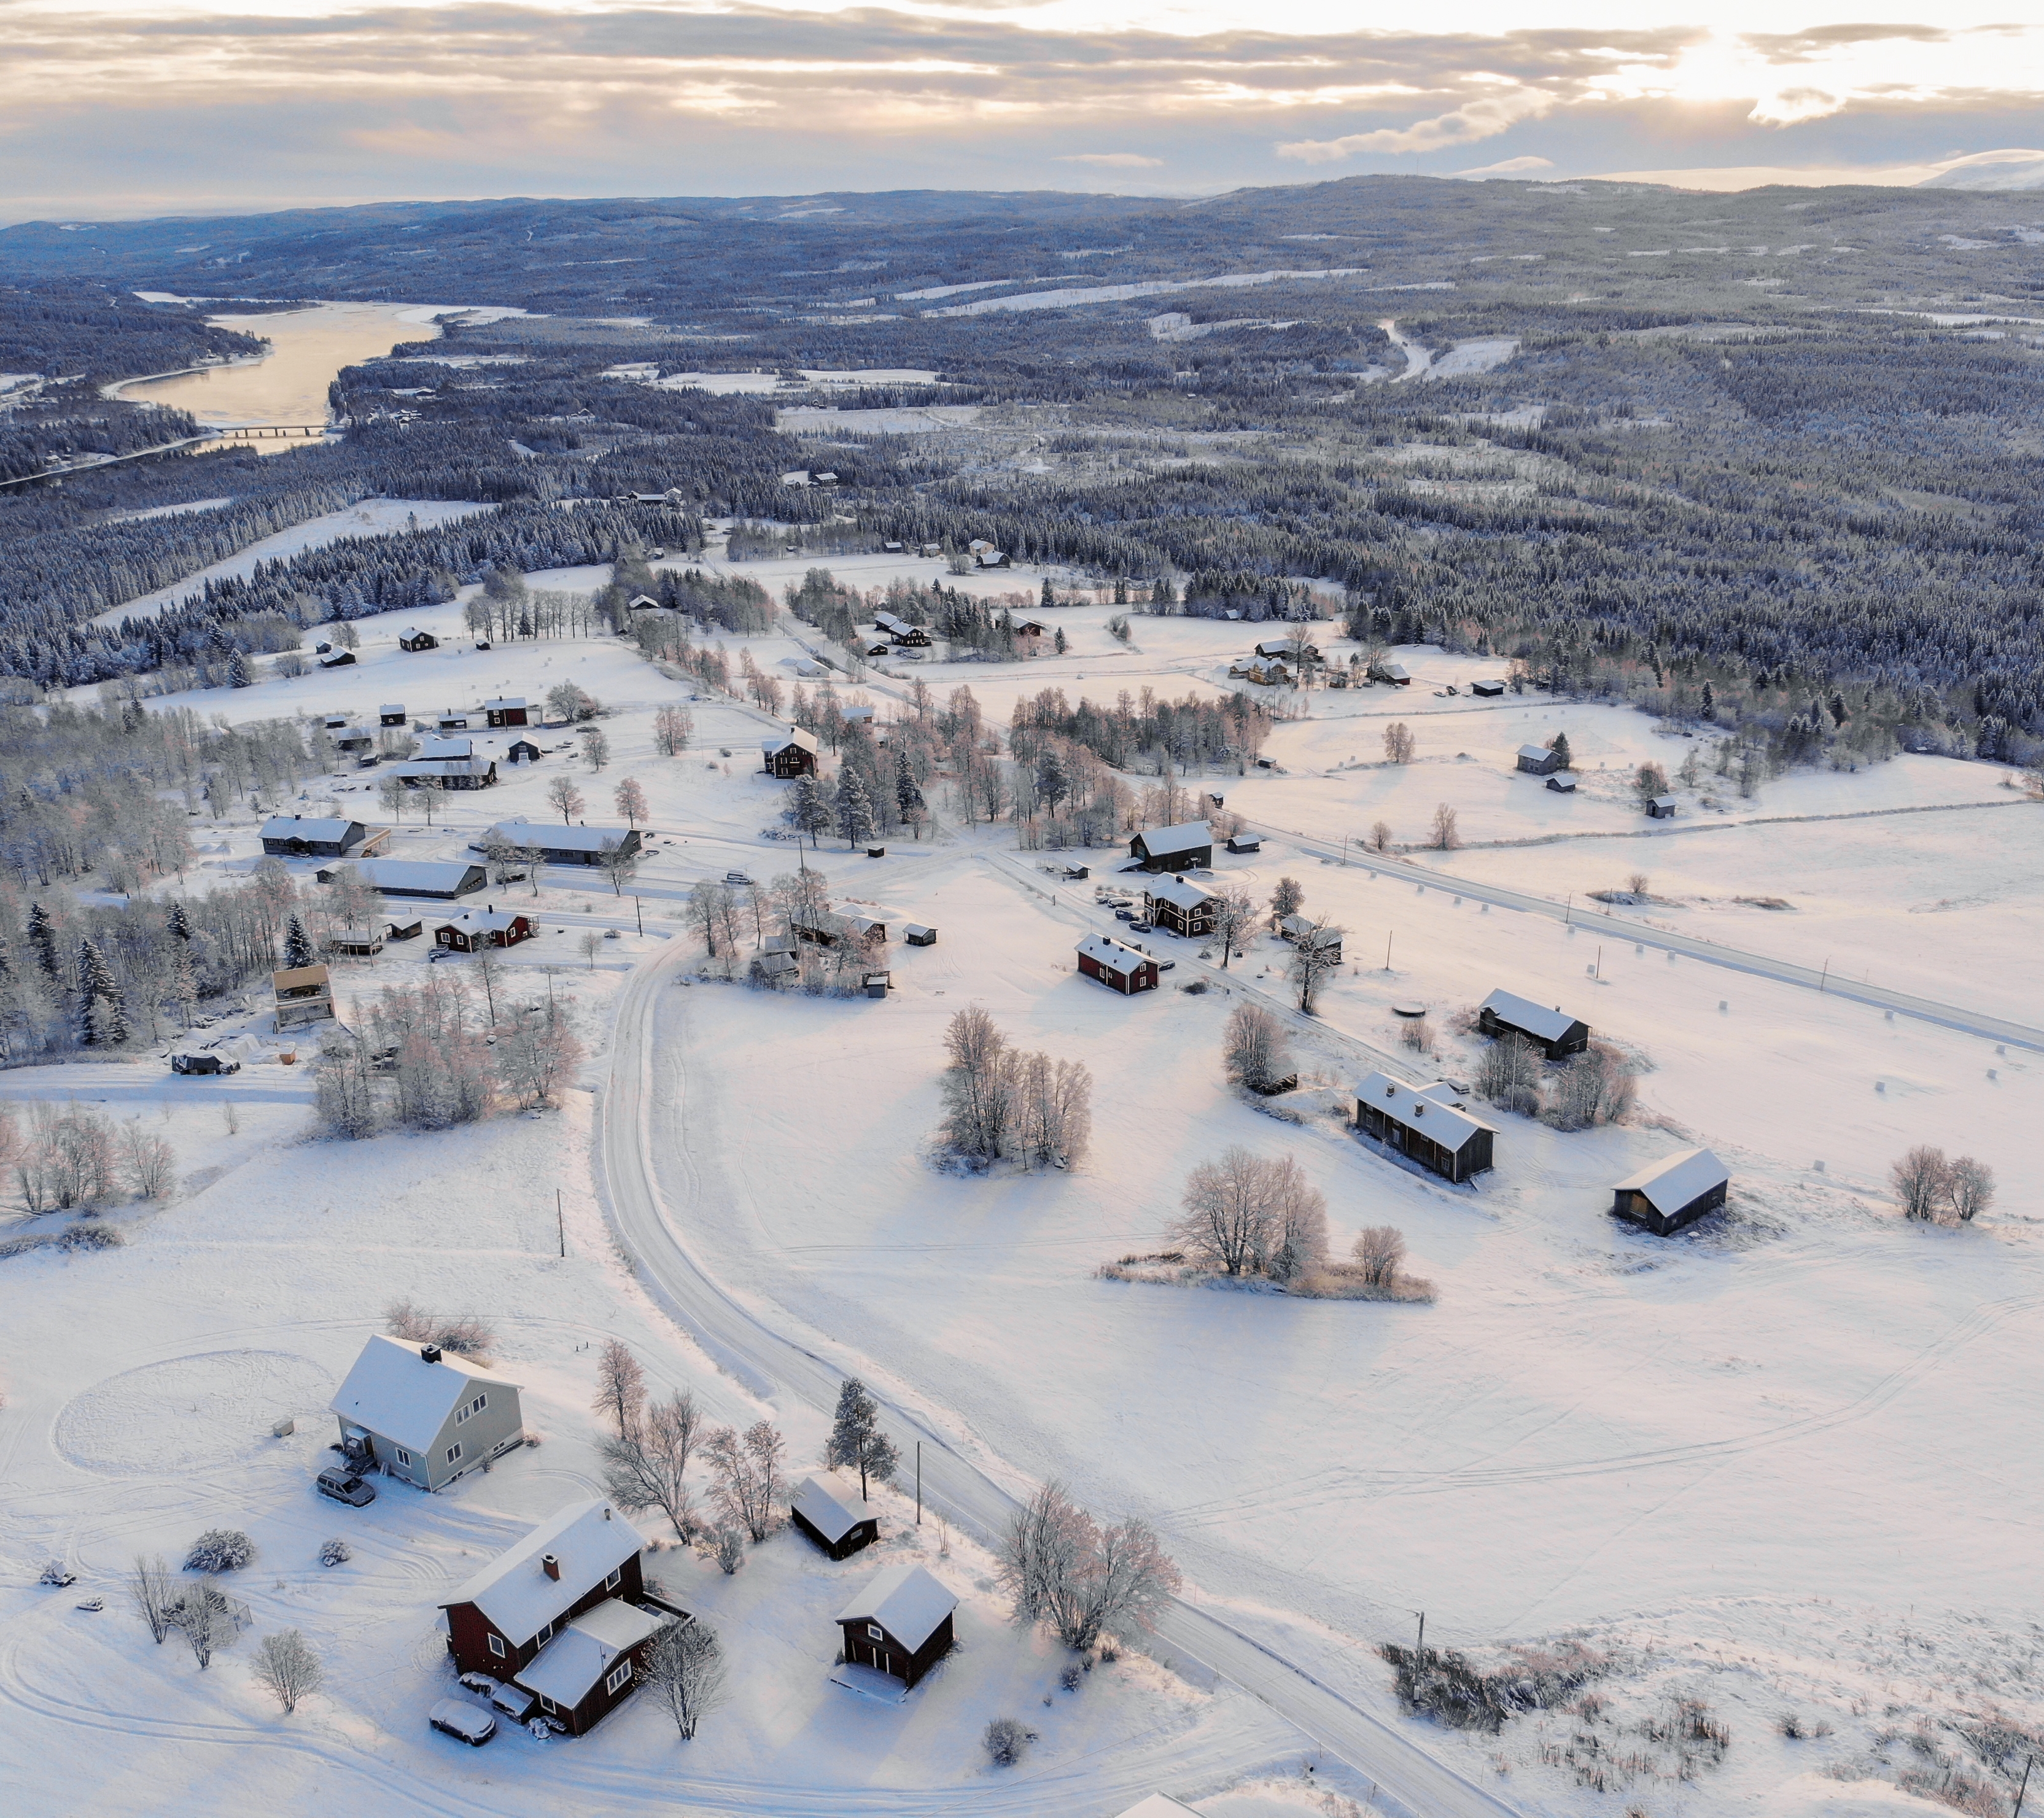 Téli tájakra optimalizált drónfotózás